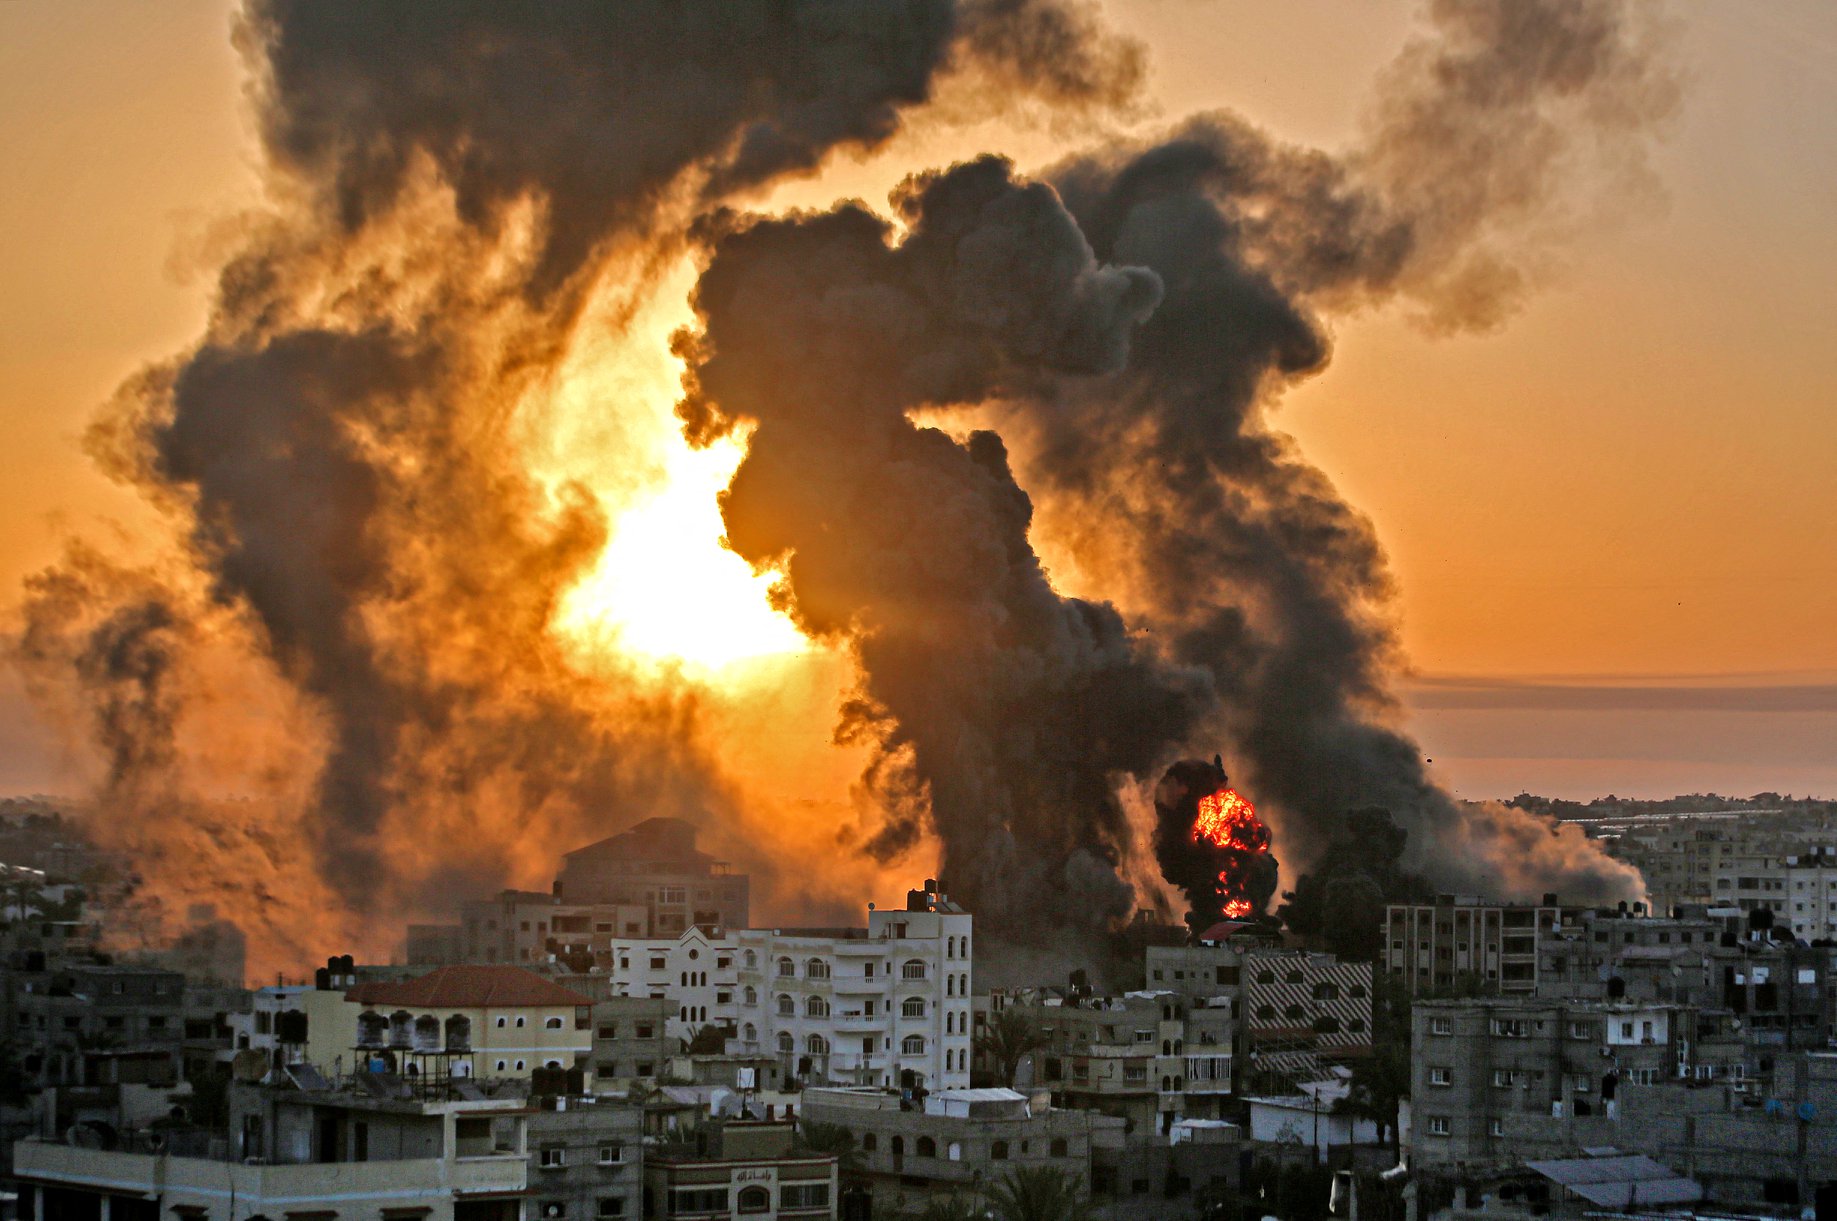 وفي اليوم الحادي والثلاثين للعدوان، واصلت إسرائيل قصفها لقطاع غزة، مما أدى إلى سقوط العديد من الشهداء والجرحى.